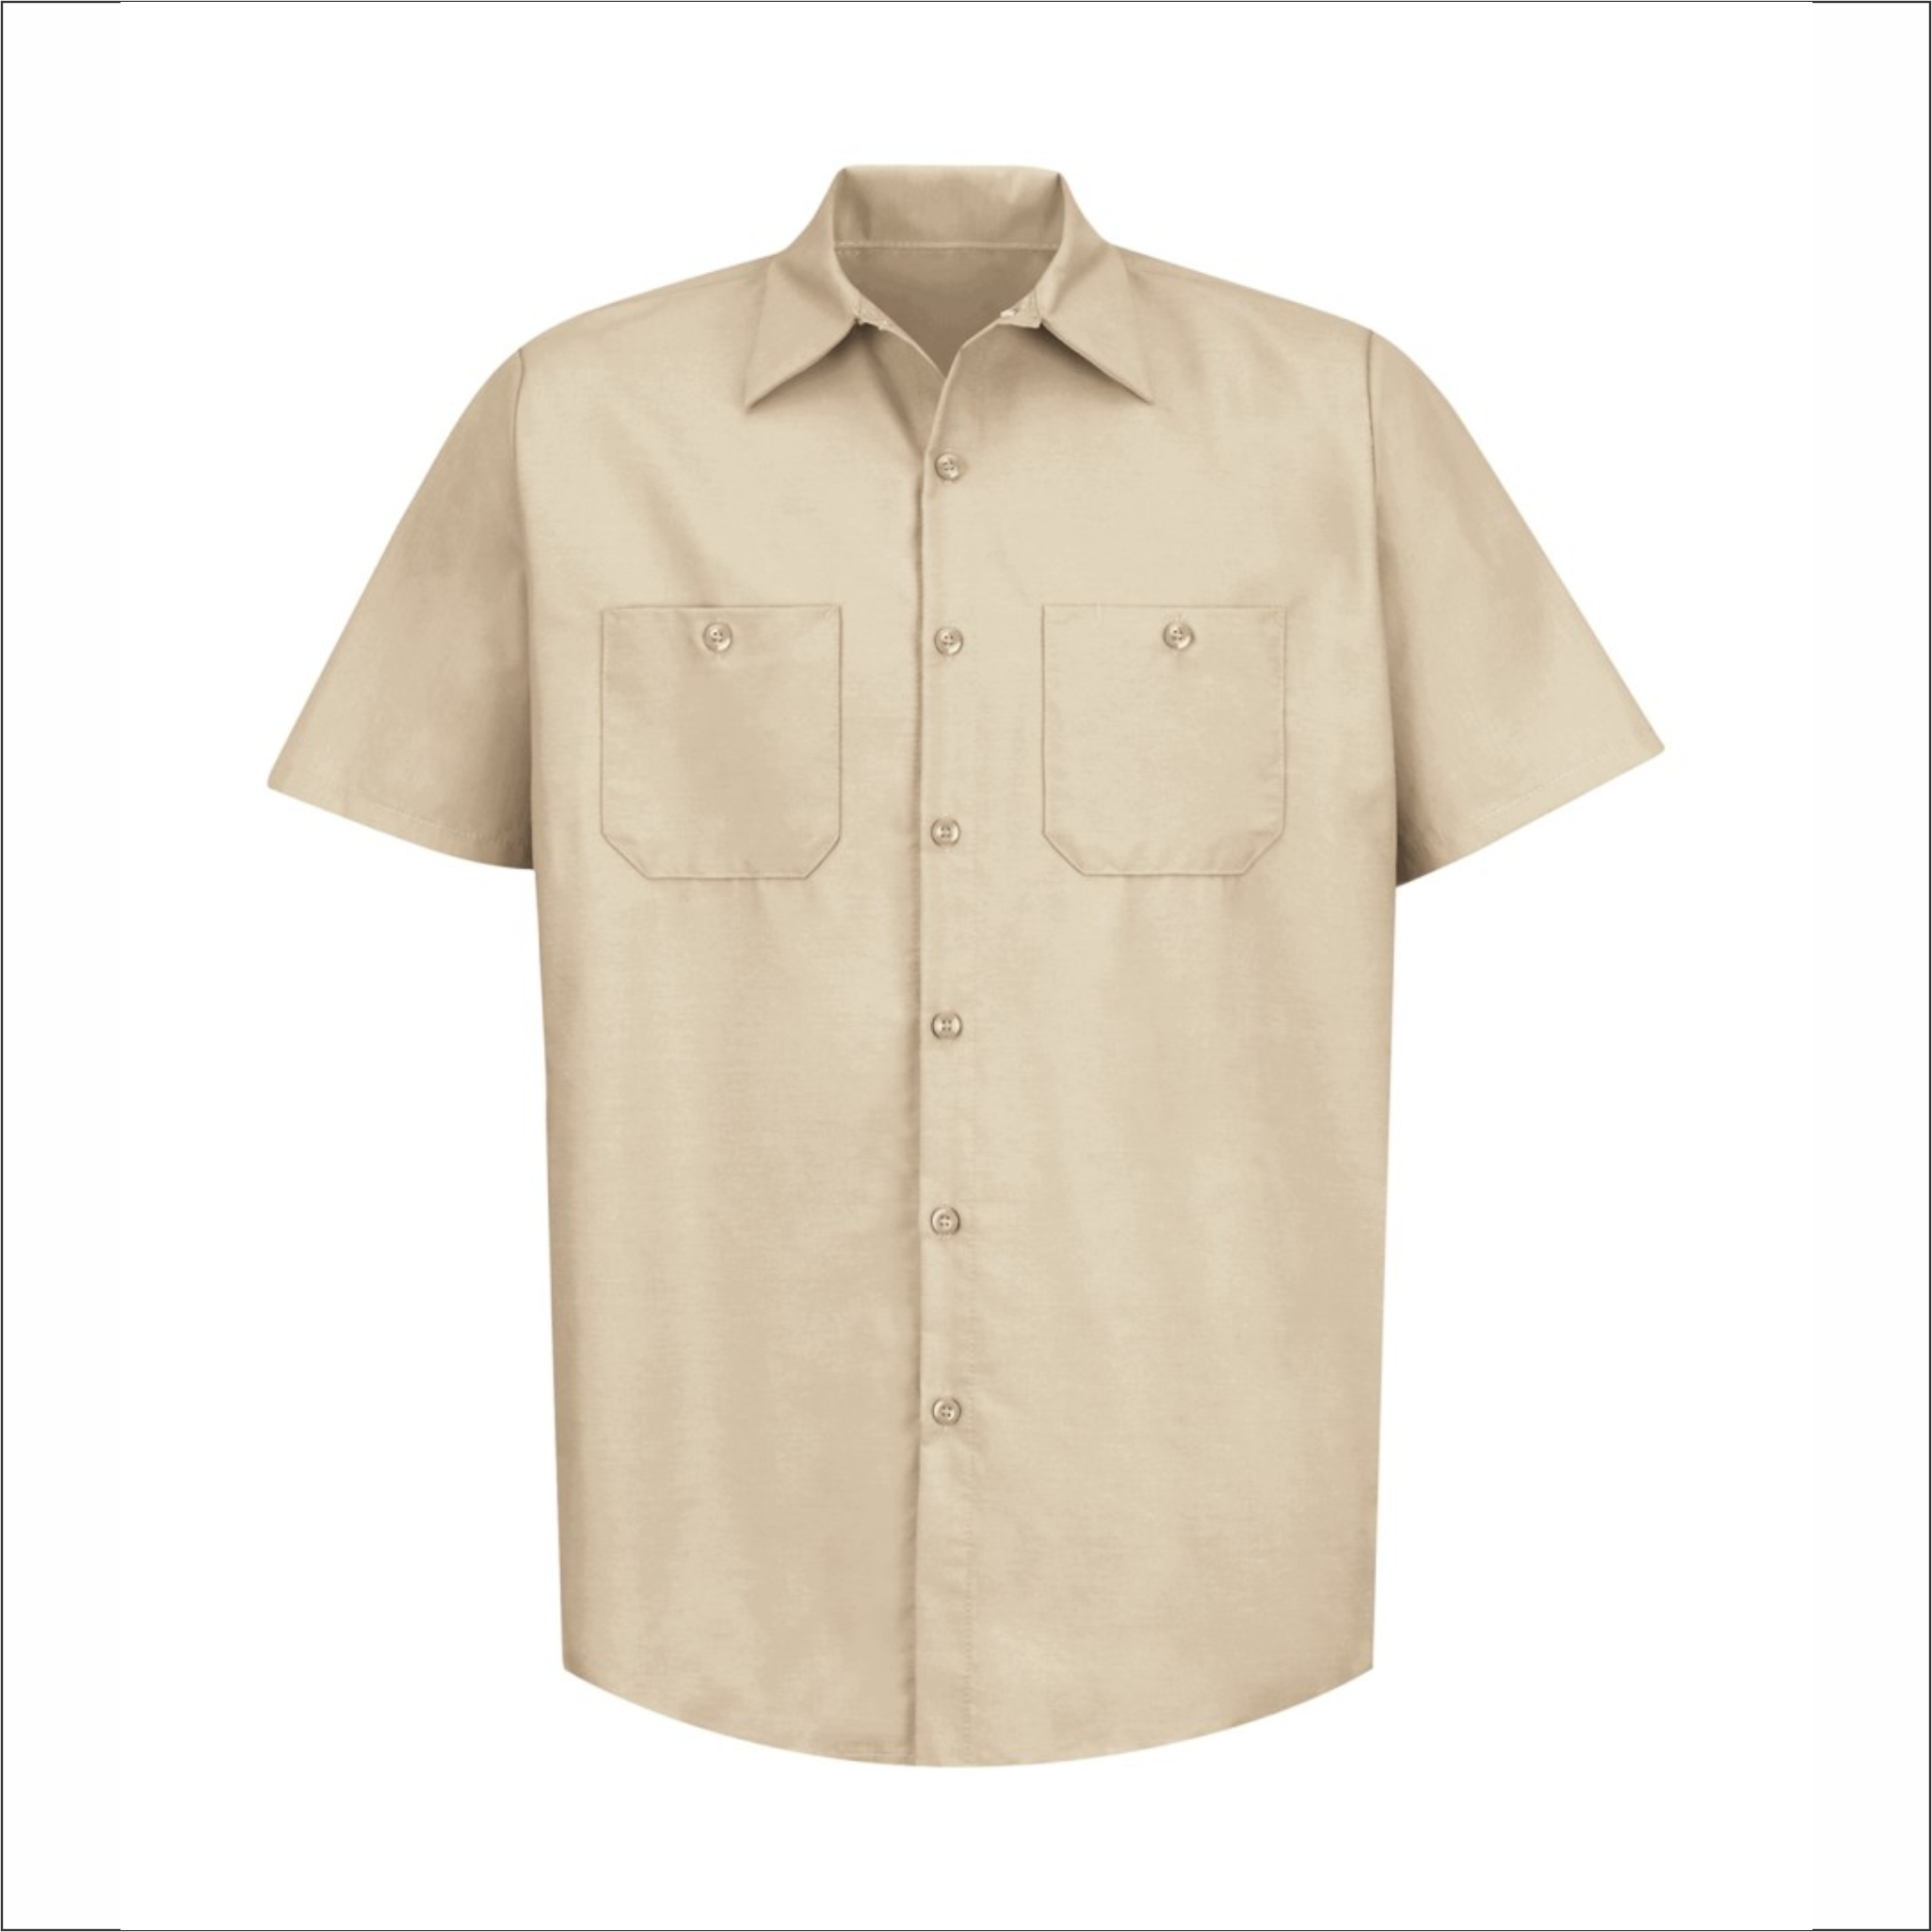 Adult Dress Light Tan Shirt - Short Sleeve - SP24